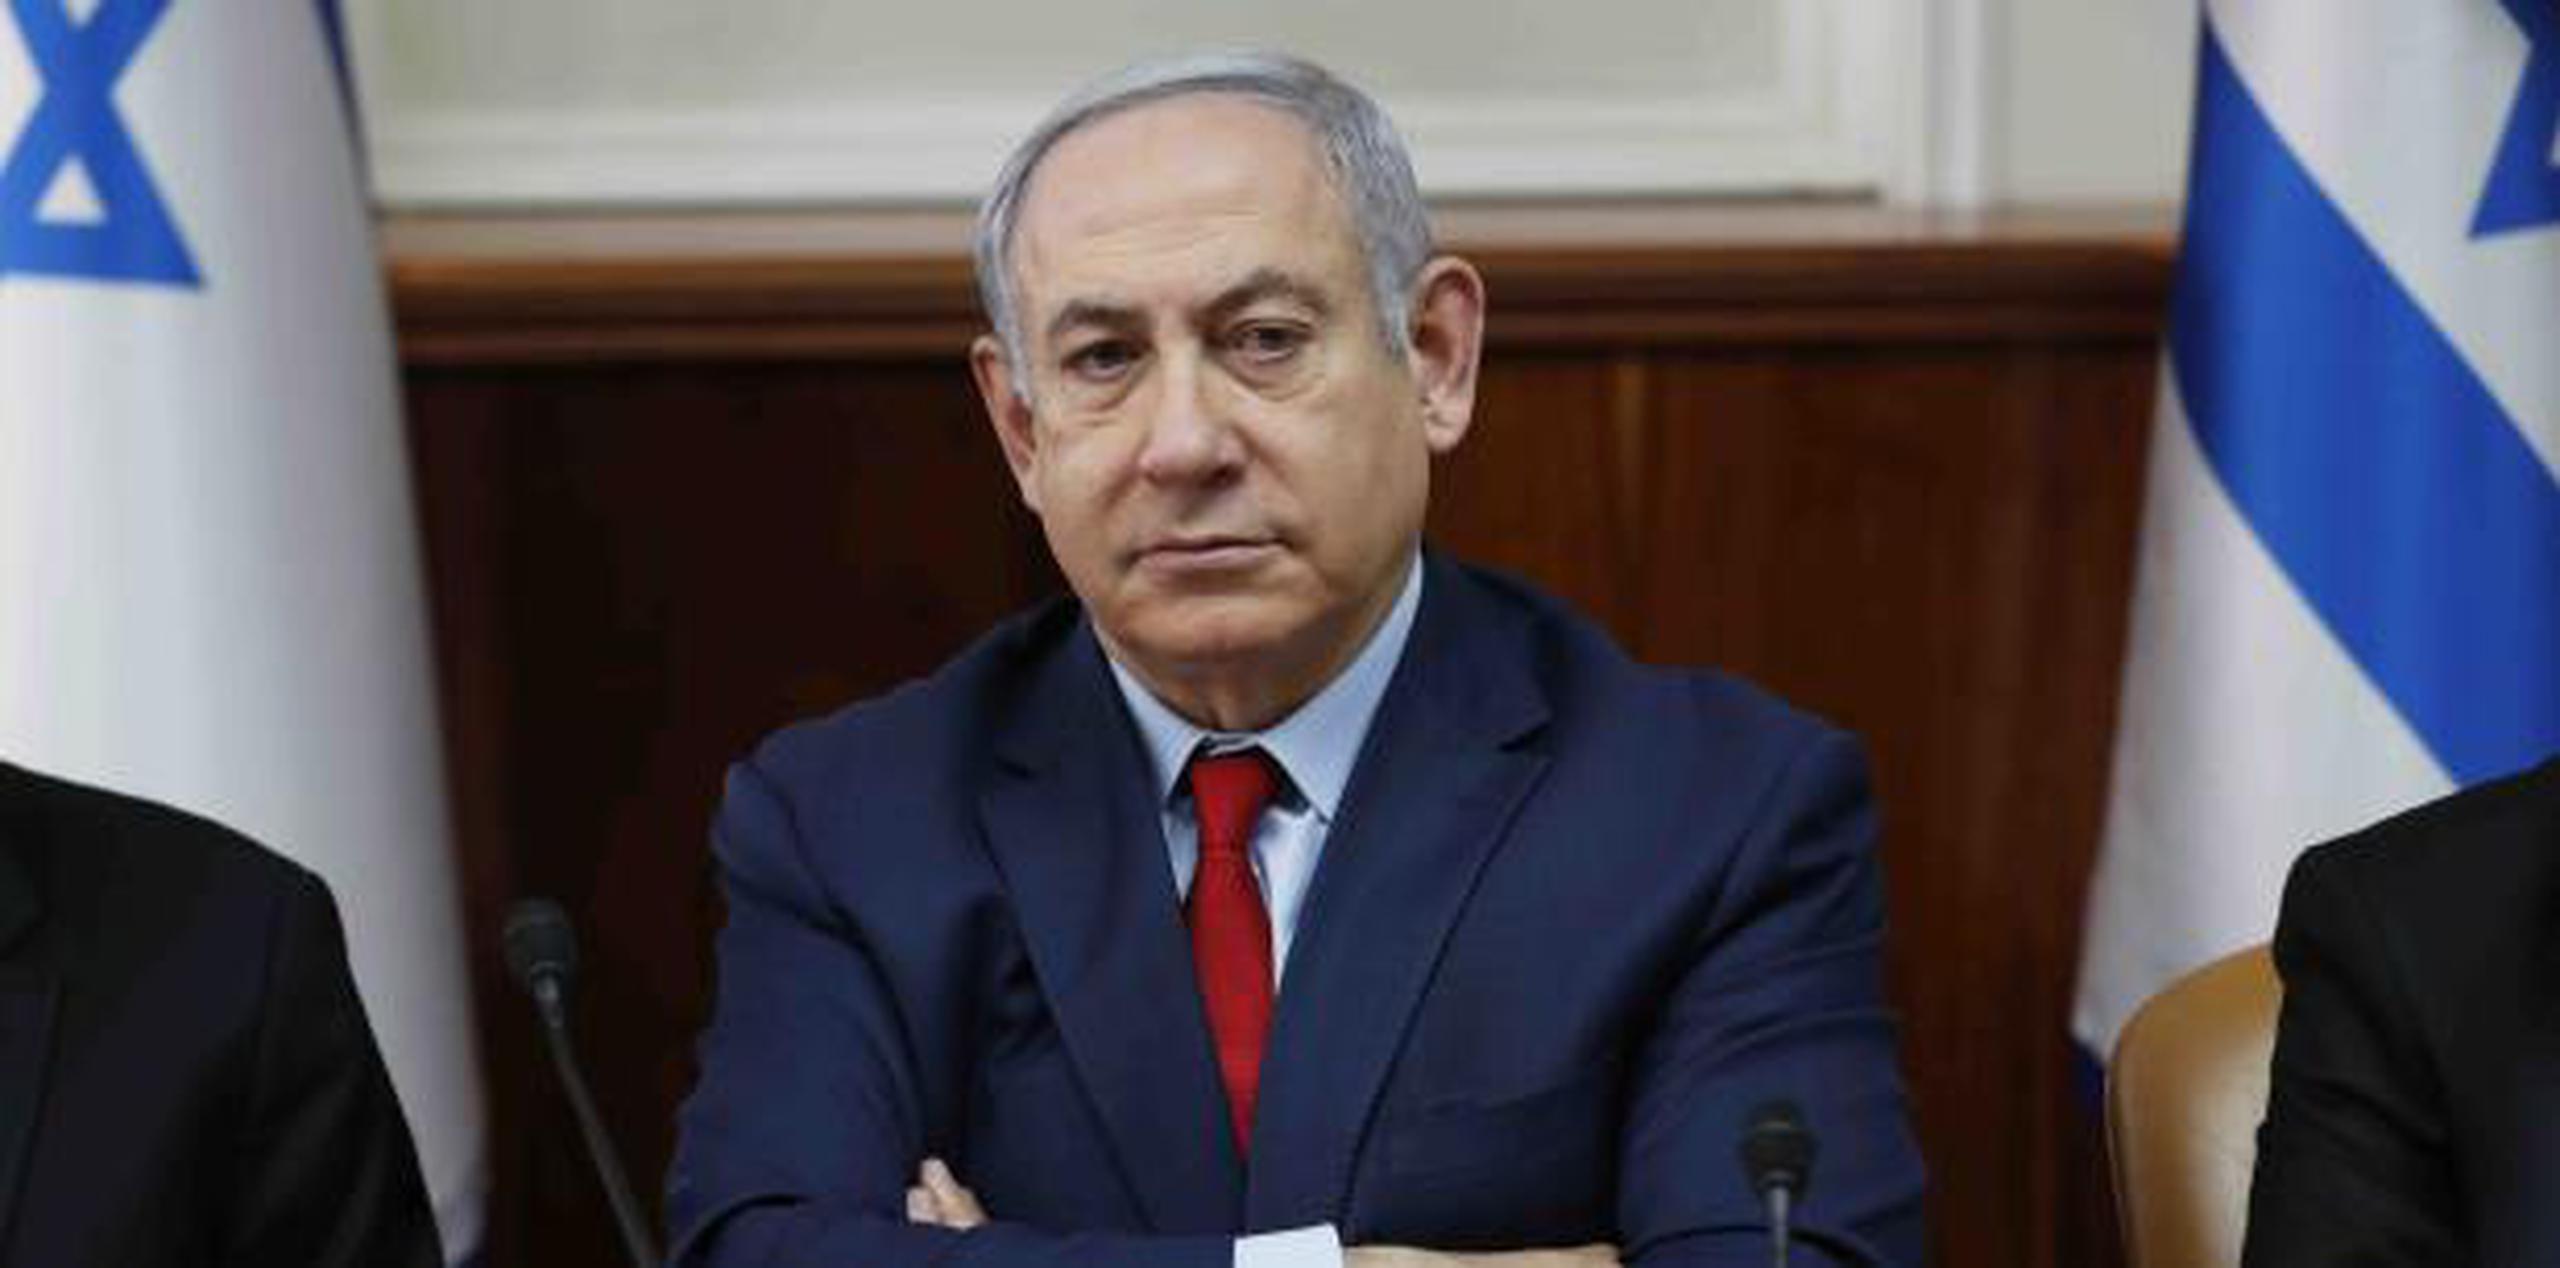 Benjamin Netanyahu ha sido uno de los más férreos críticos del régimen teocrático iraní en año recientes. (Ronen Zvulun / Pool vía AP)